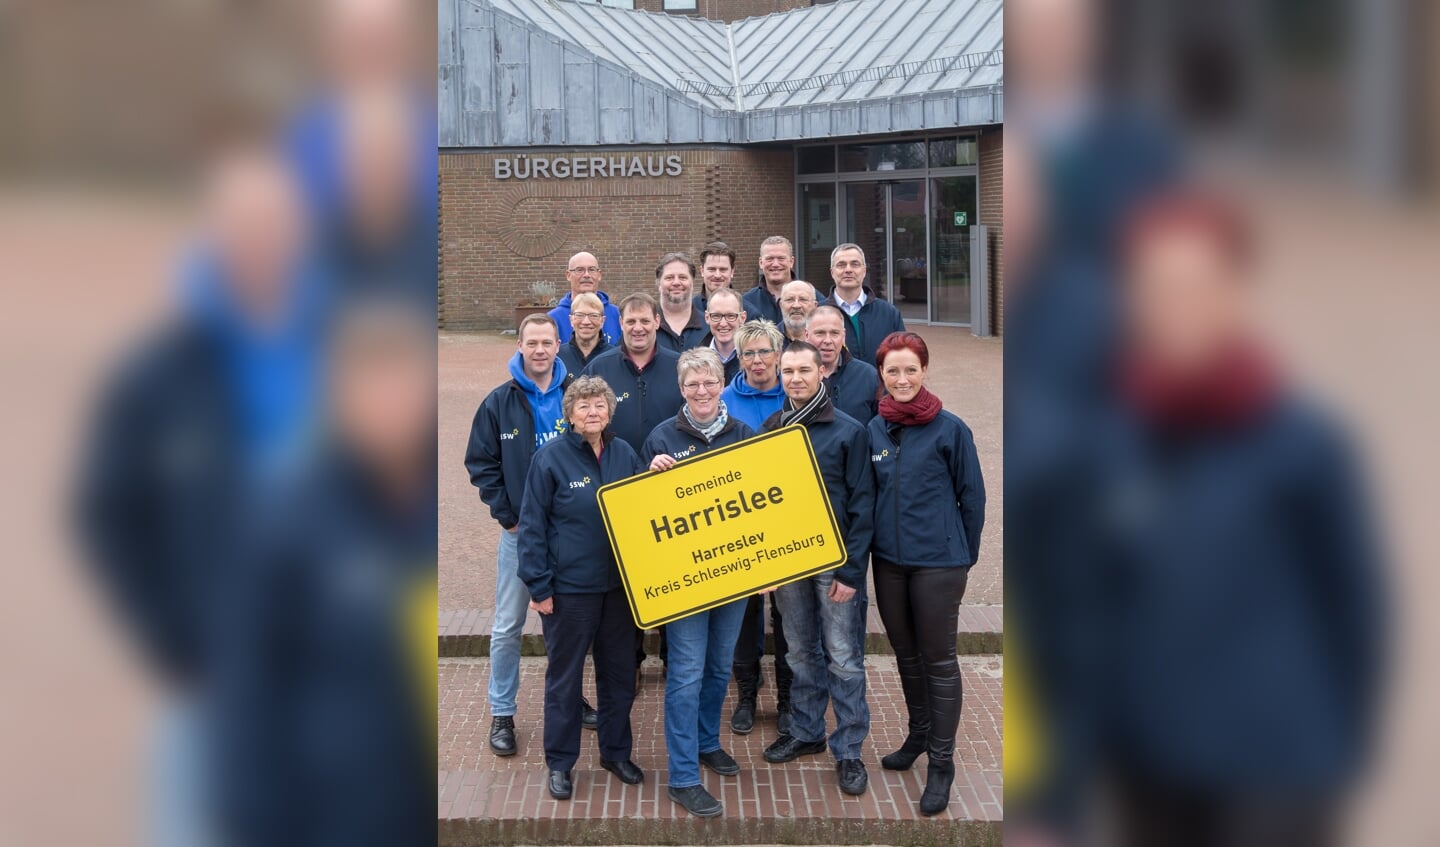 SSW Harreslevs kandidater fra kommunalvalget i 2018.